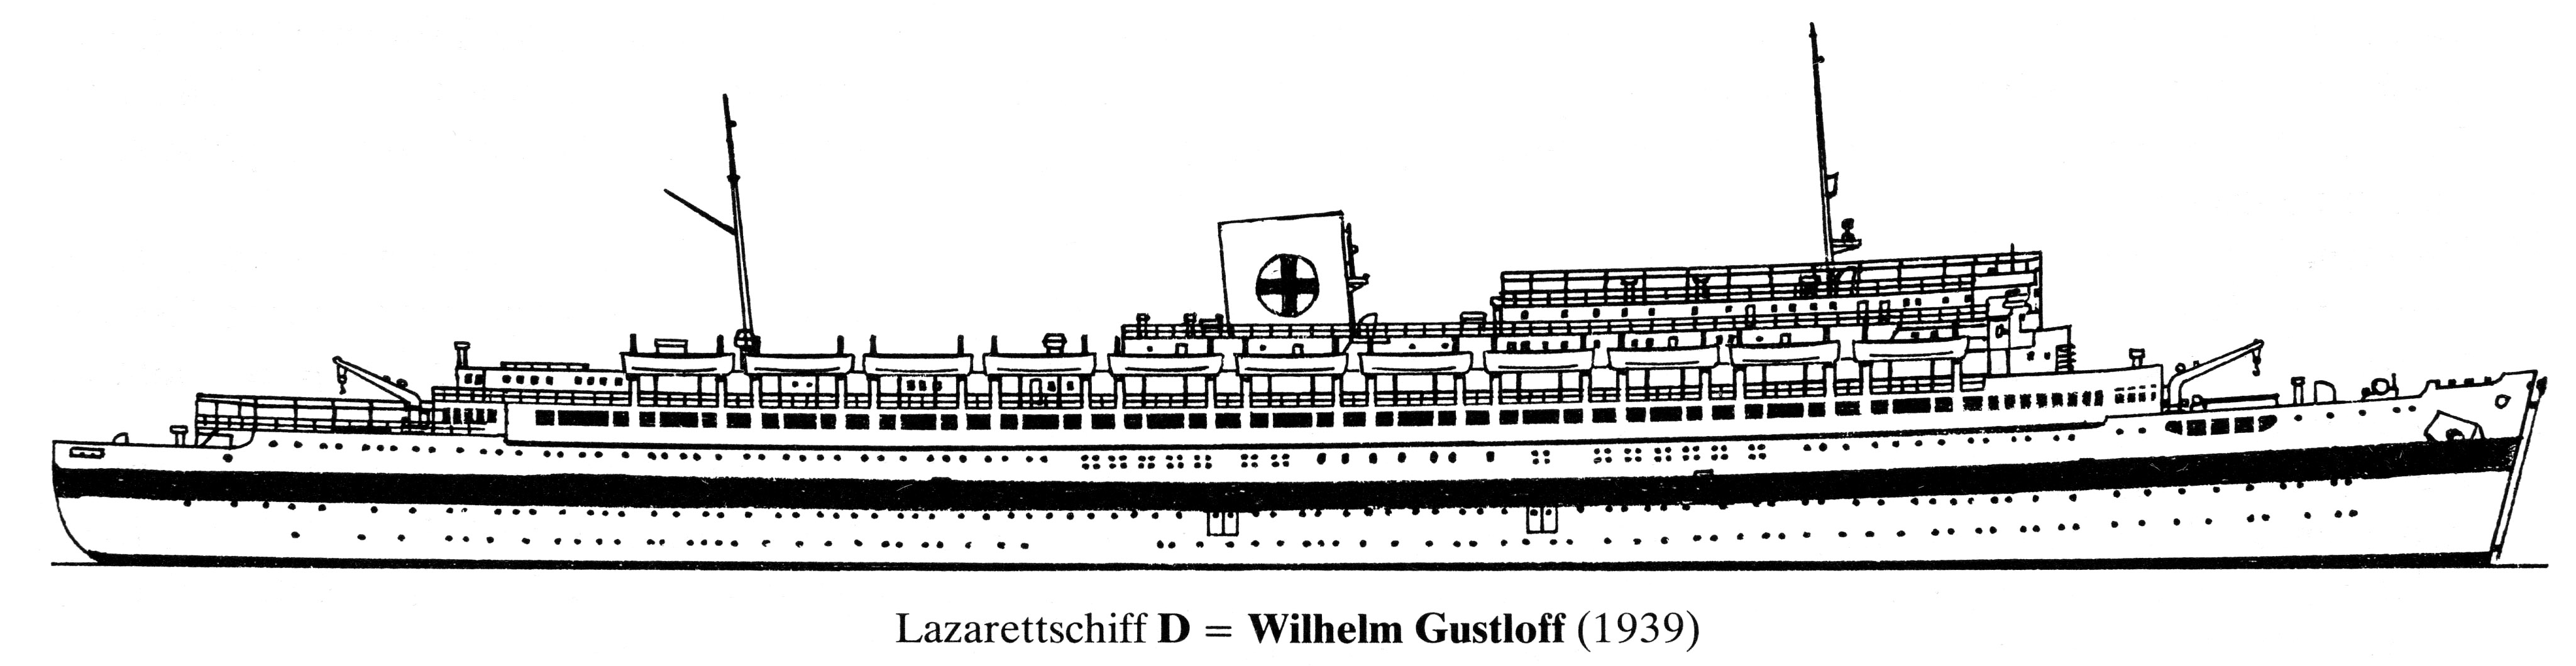 Wilhelm Gustloff (Lazaretschiff D).jpg